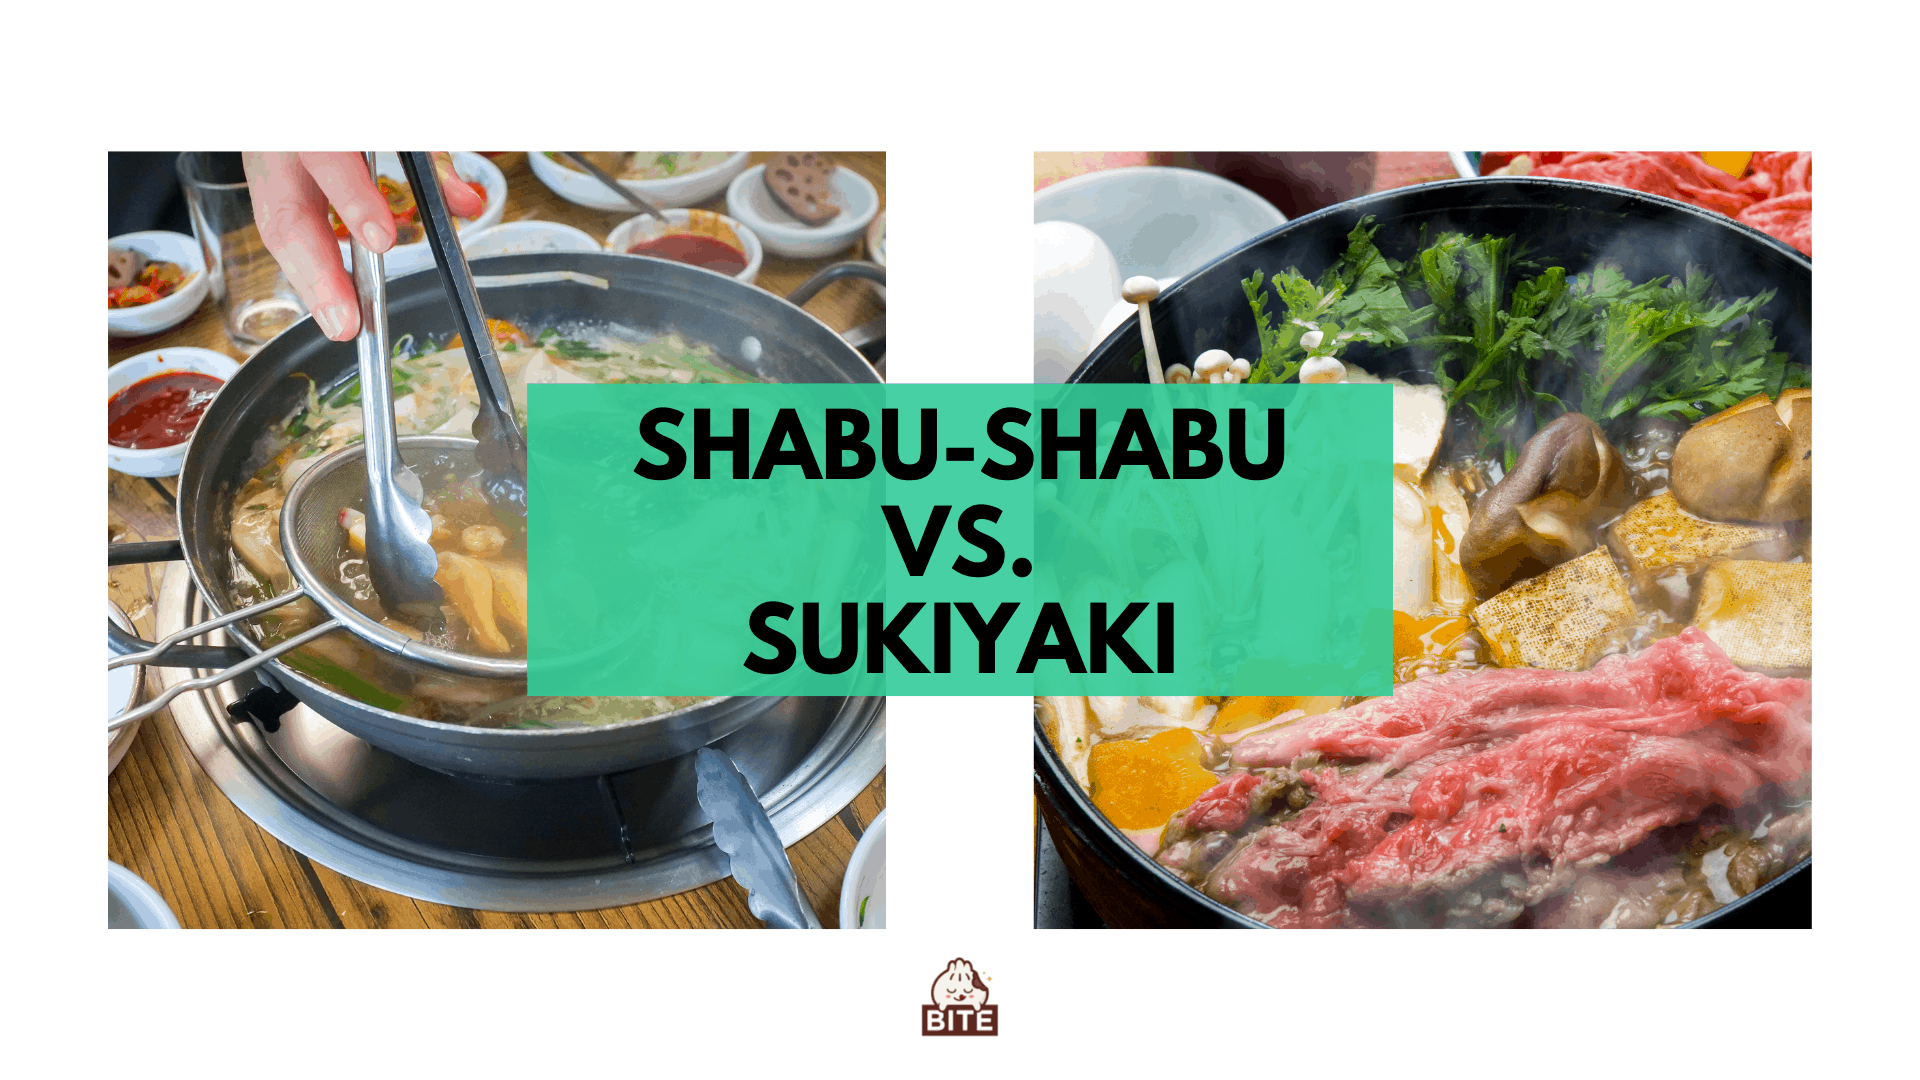 Shabu-shabu vs. sukiyaki | Ambos pratos quentes, mas com um toque diferente